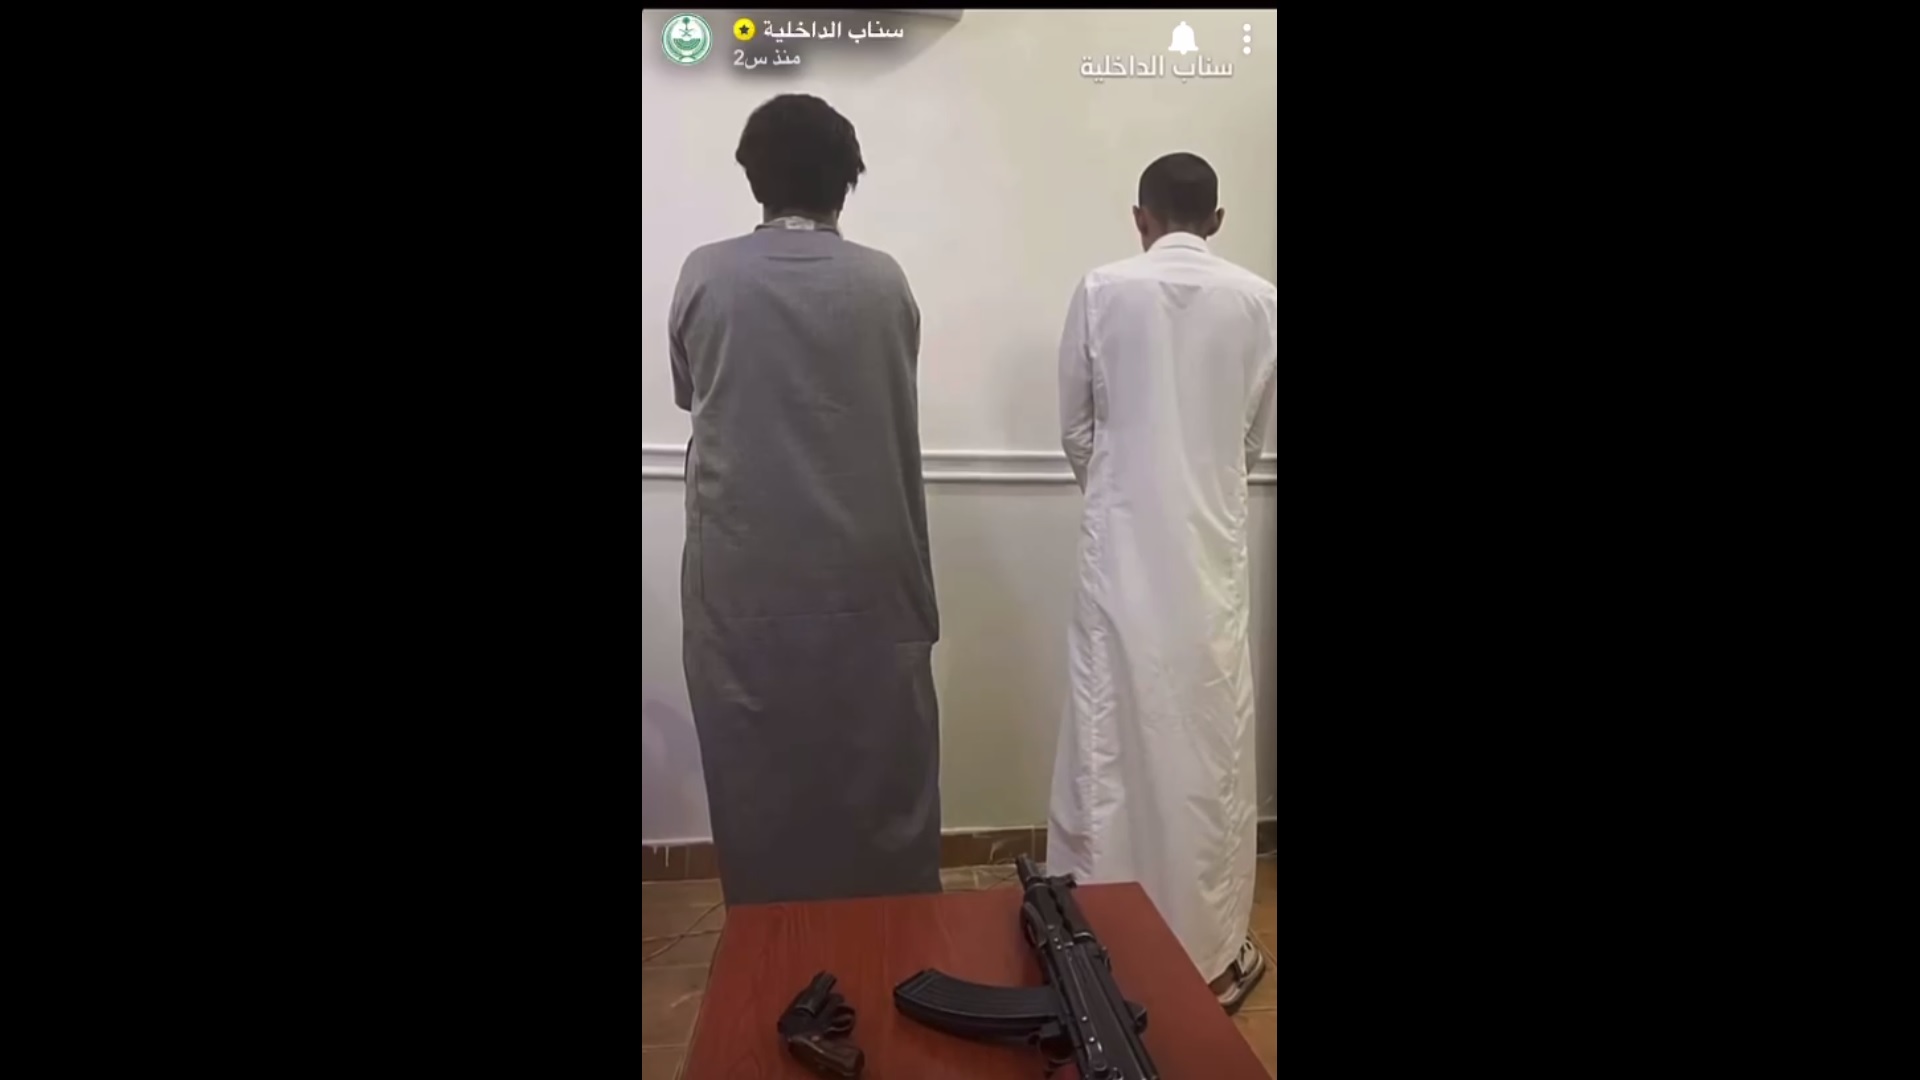 القبض على مواطنين أطلقا النار من أسلحة نارية في الرياض